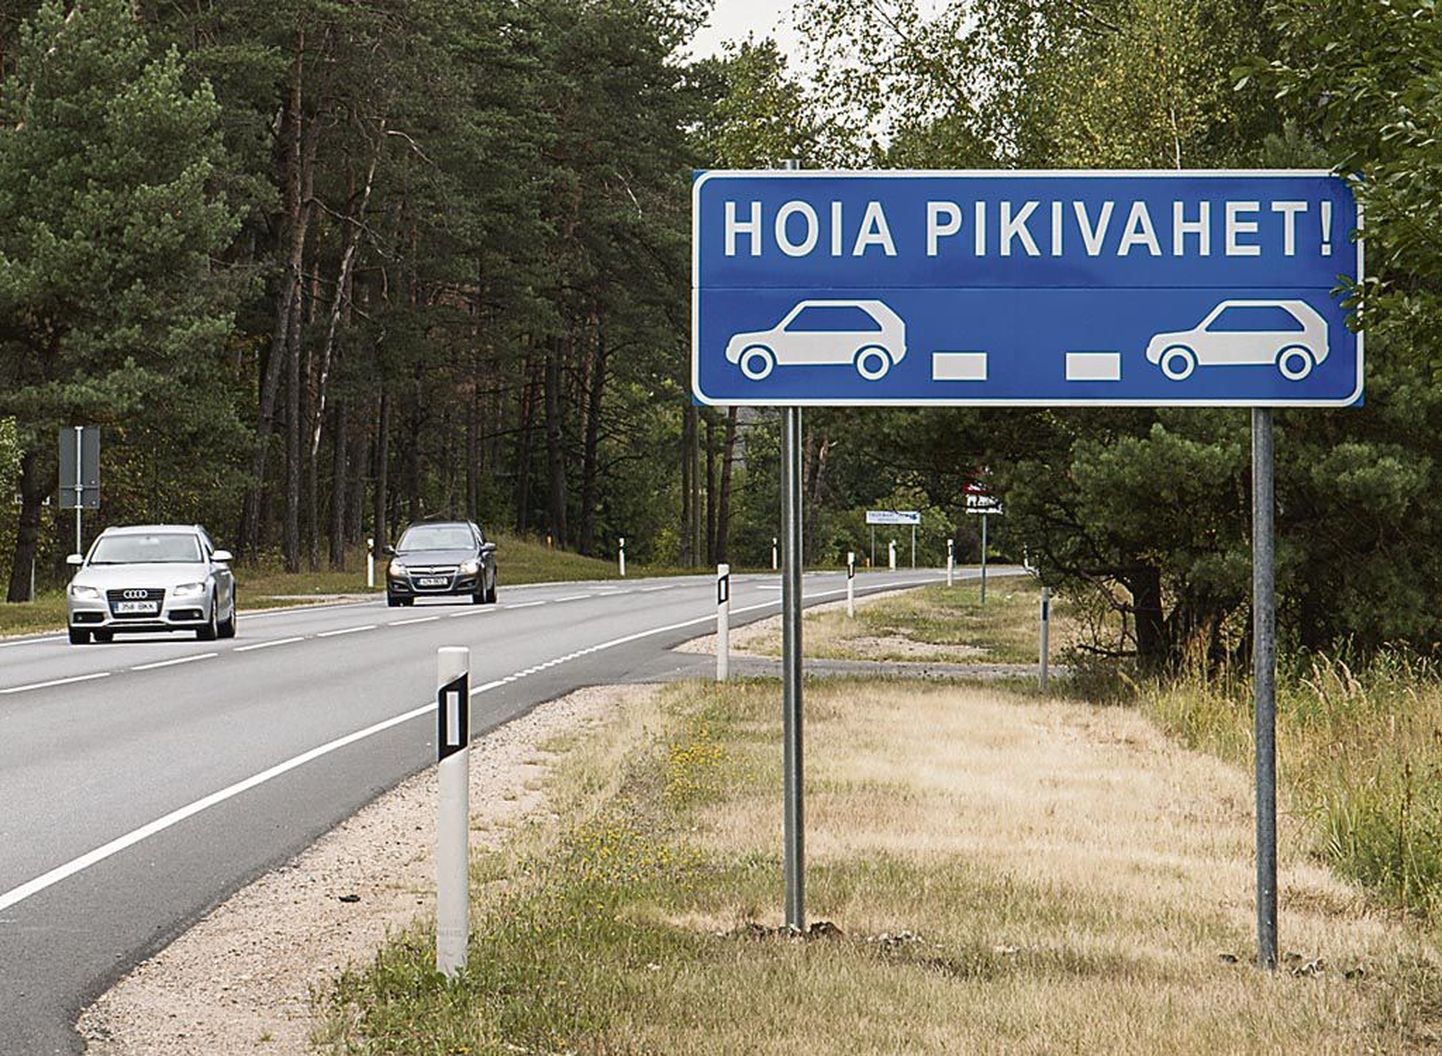 Pärnust lõuna poole väljasõidul on pikivahe hoidmist rõhutav teekattemärgistus ja liiklusmärk tähistamas kahe kilomeetri pikkust lõiku Via Baltical.